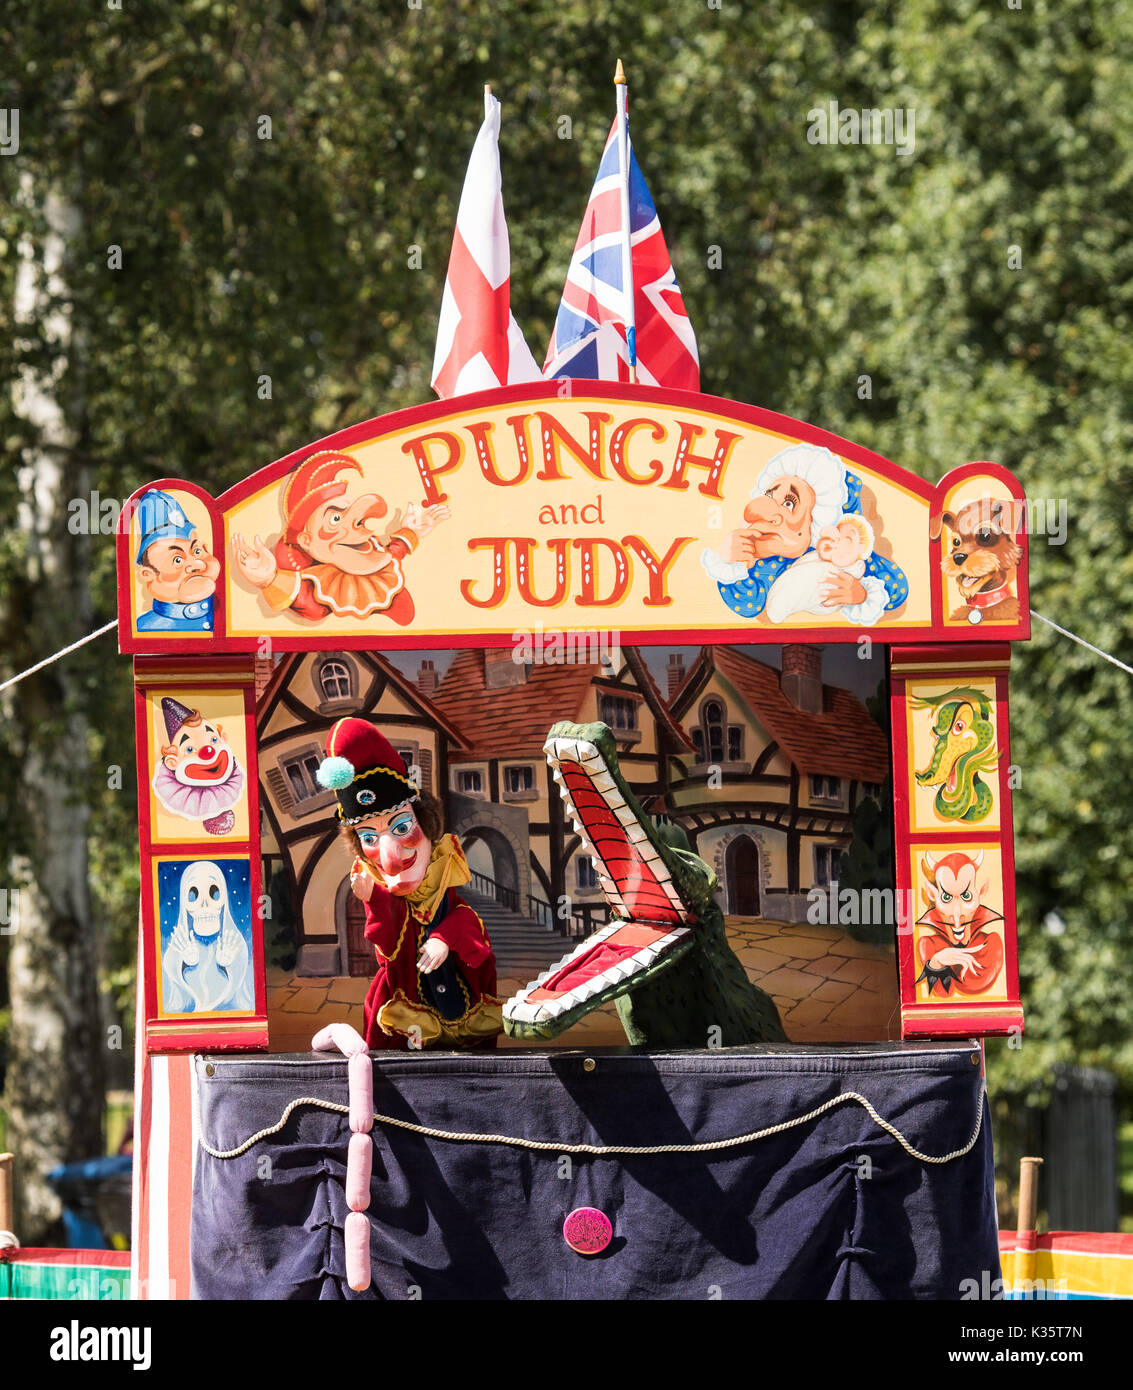 Un traditionnel Punch and Judy show par David Wilde dans un parc anglais à l'été à Brentwood, Essex avec les Mr Punch, crocodile et saucisses Banque D'Images